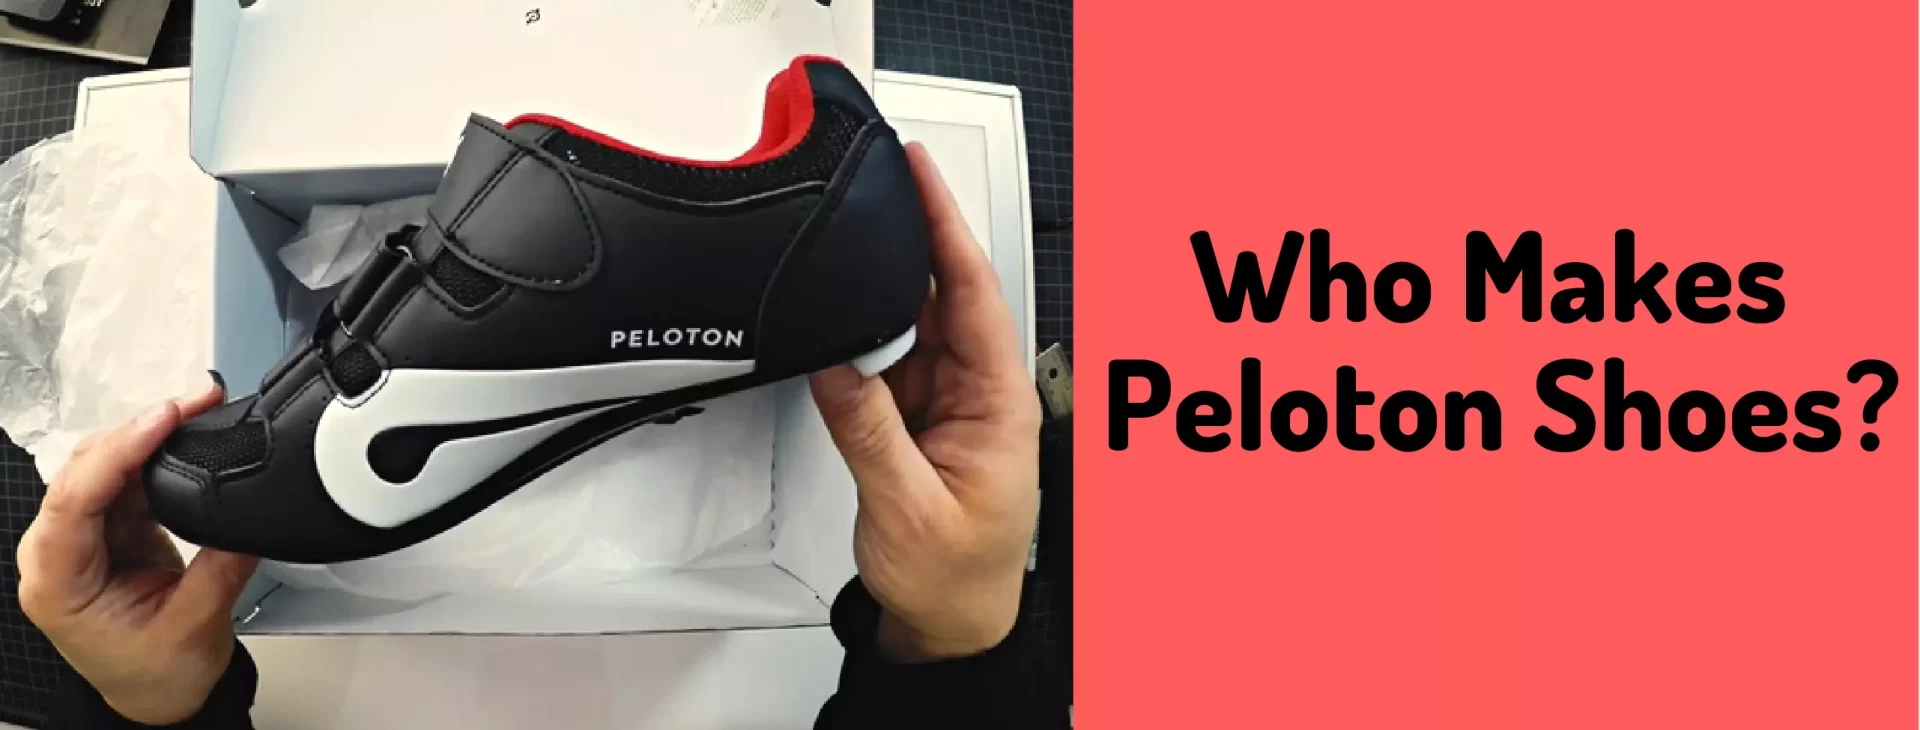 Who Makes Peloton Shoes?